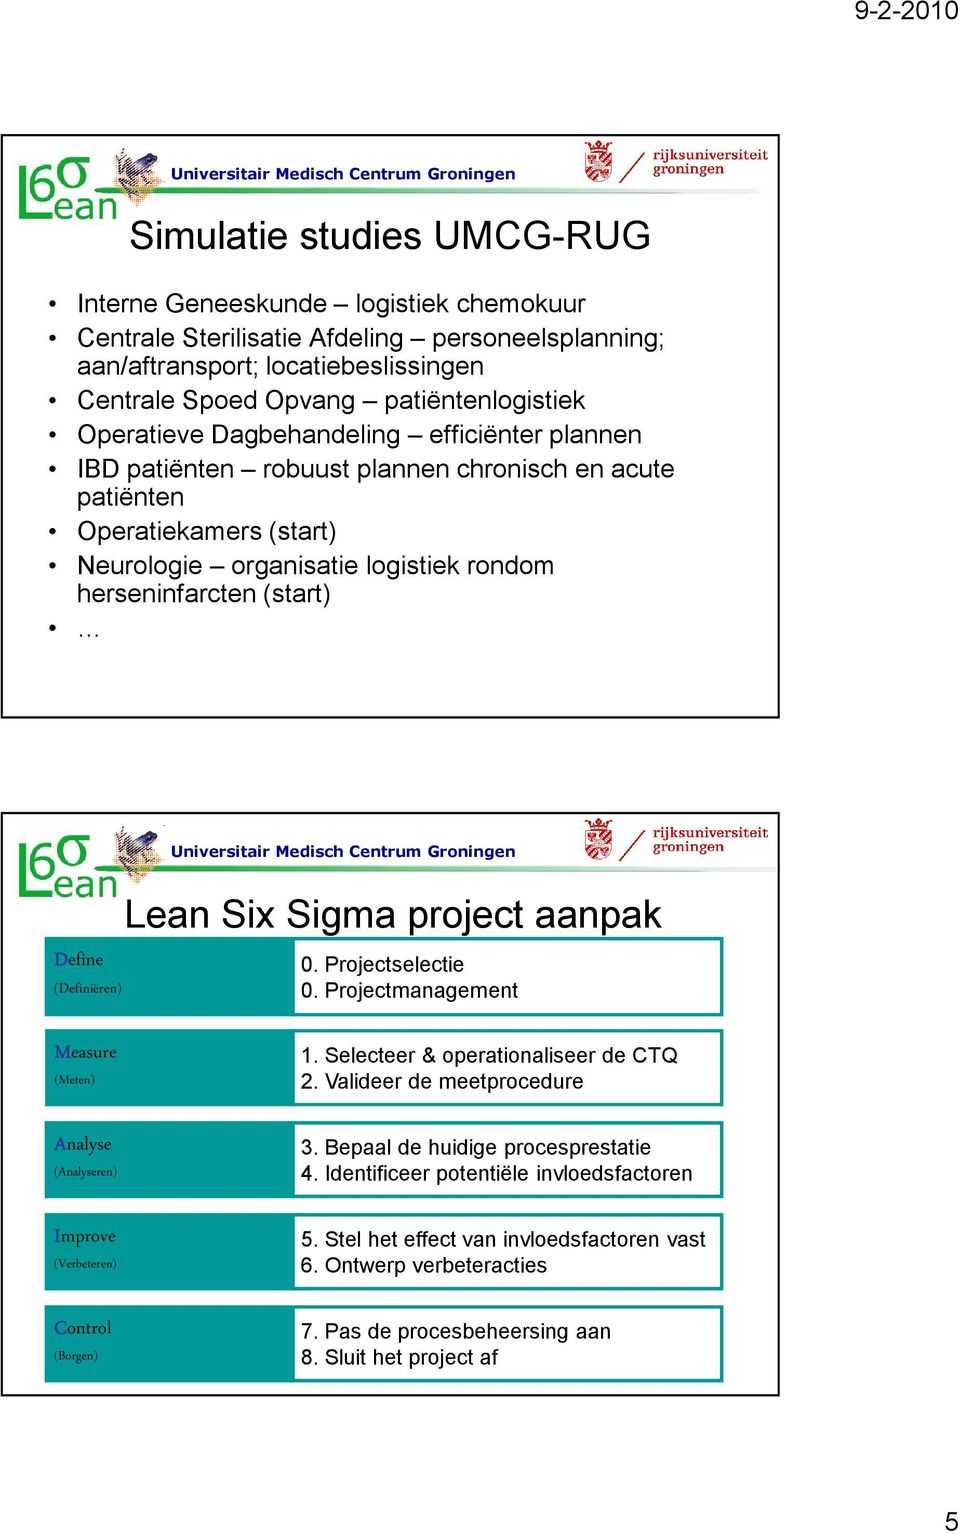 (Definiëren) Lean Six Sigma project aanpak 0. Projectselectie 0. Projectmanagement Measure (Meten) Analyse (Analyseren) Improve (Verbeteren) Control (Borgen). Selecteer & operationaliseer de CTQ.